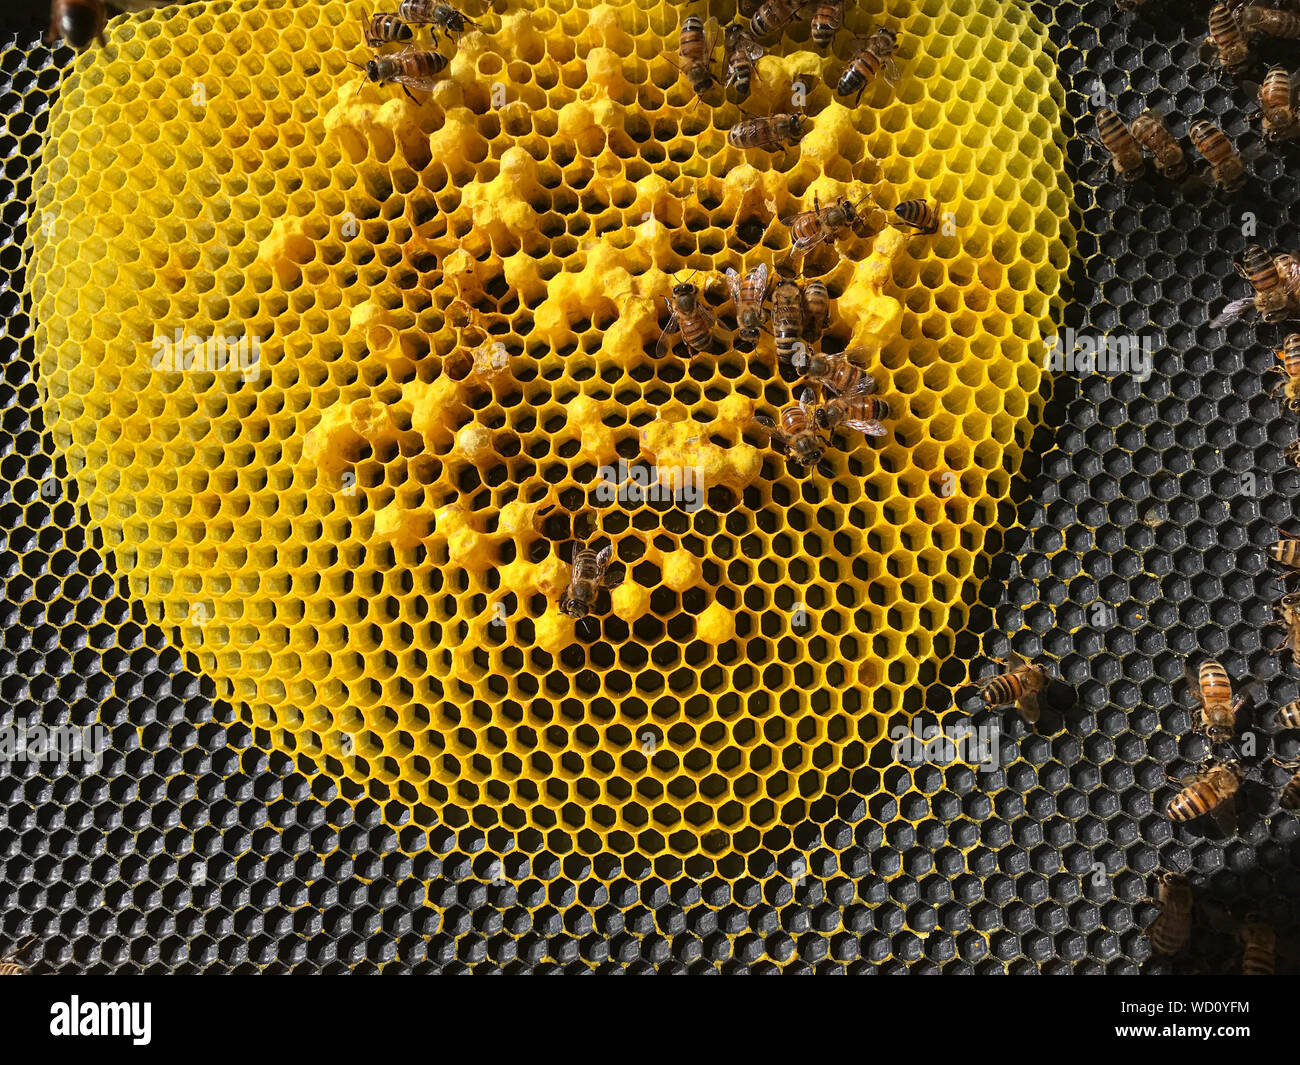 Mehrere Eier pro Kammer in einem fehlerhaften Bienenkorb. Stockfoto